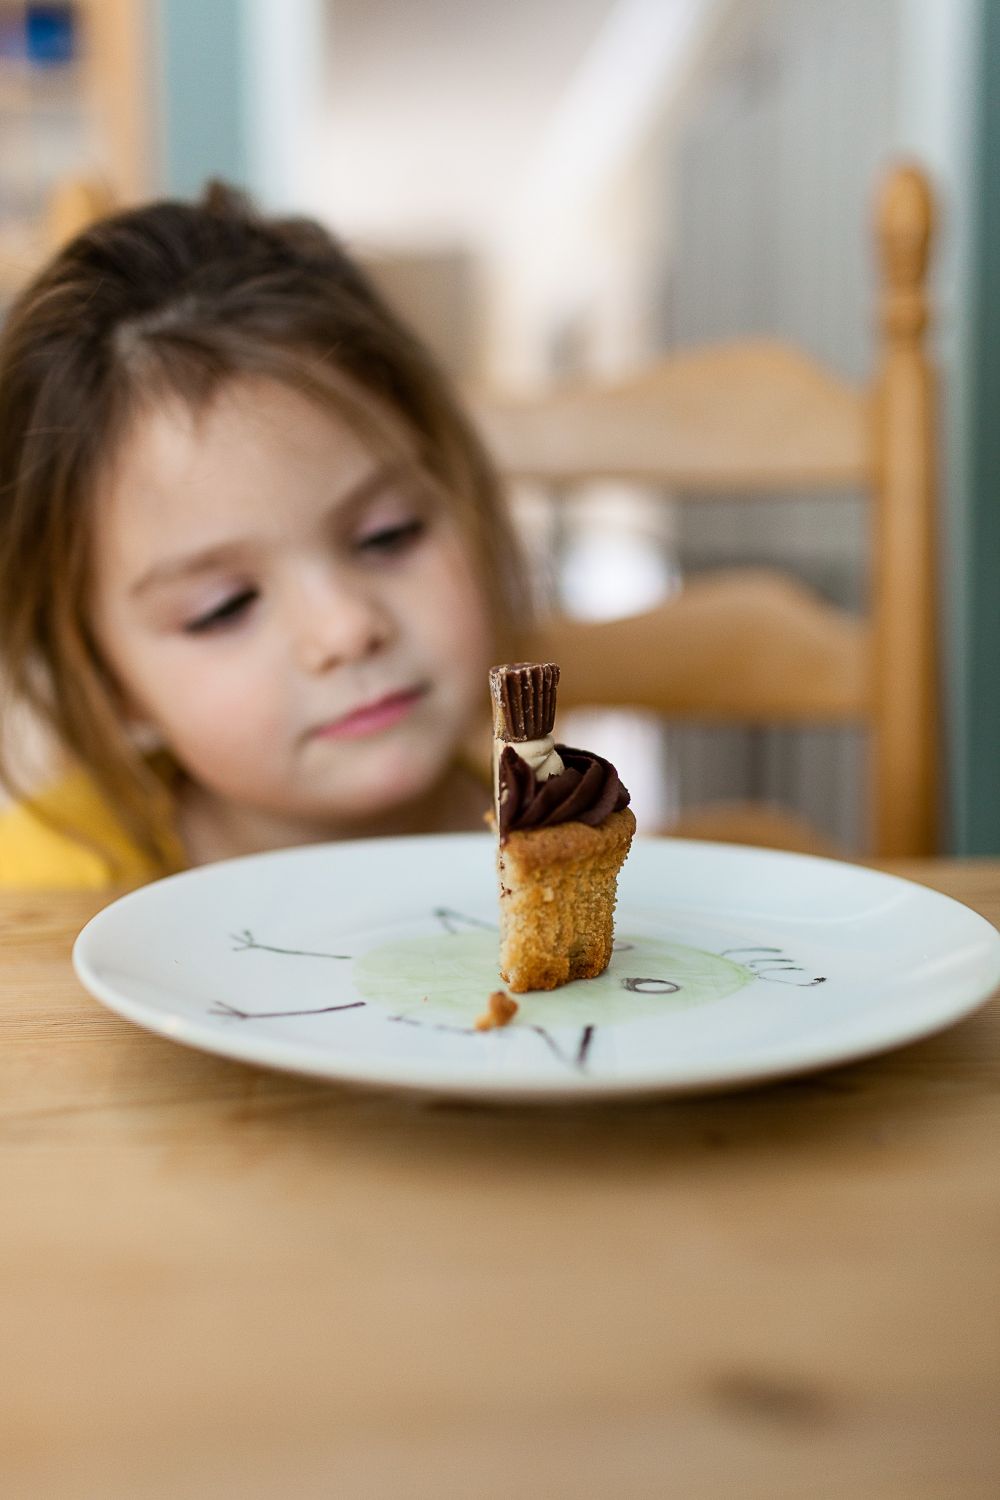  Ein Mädchen schaut auf einen Cupcake. Thema: Fragen zur Schwangerschaft